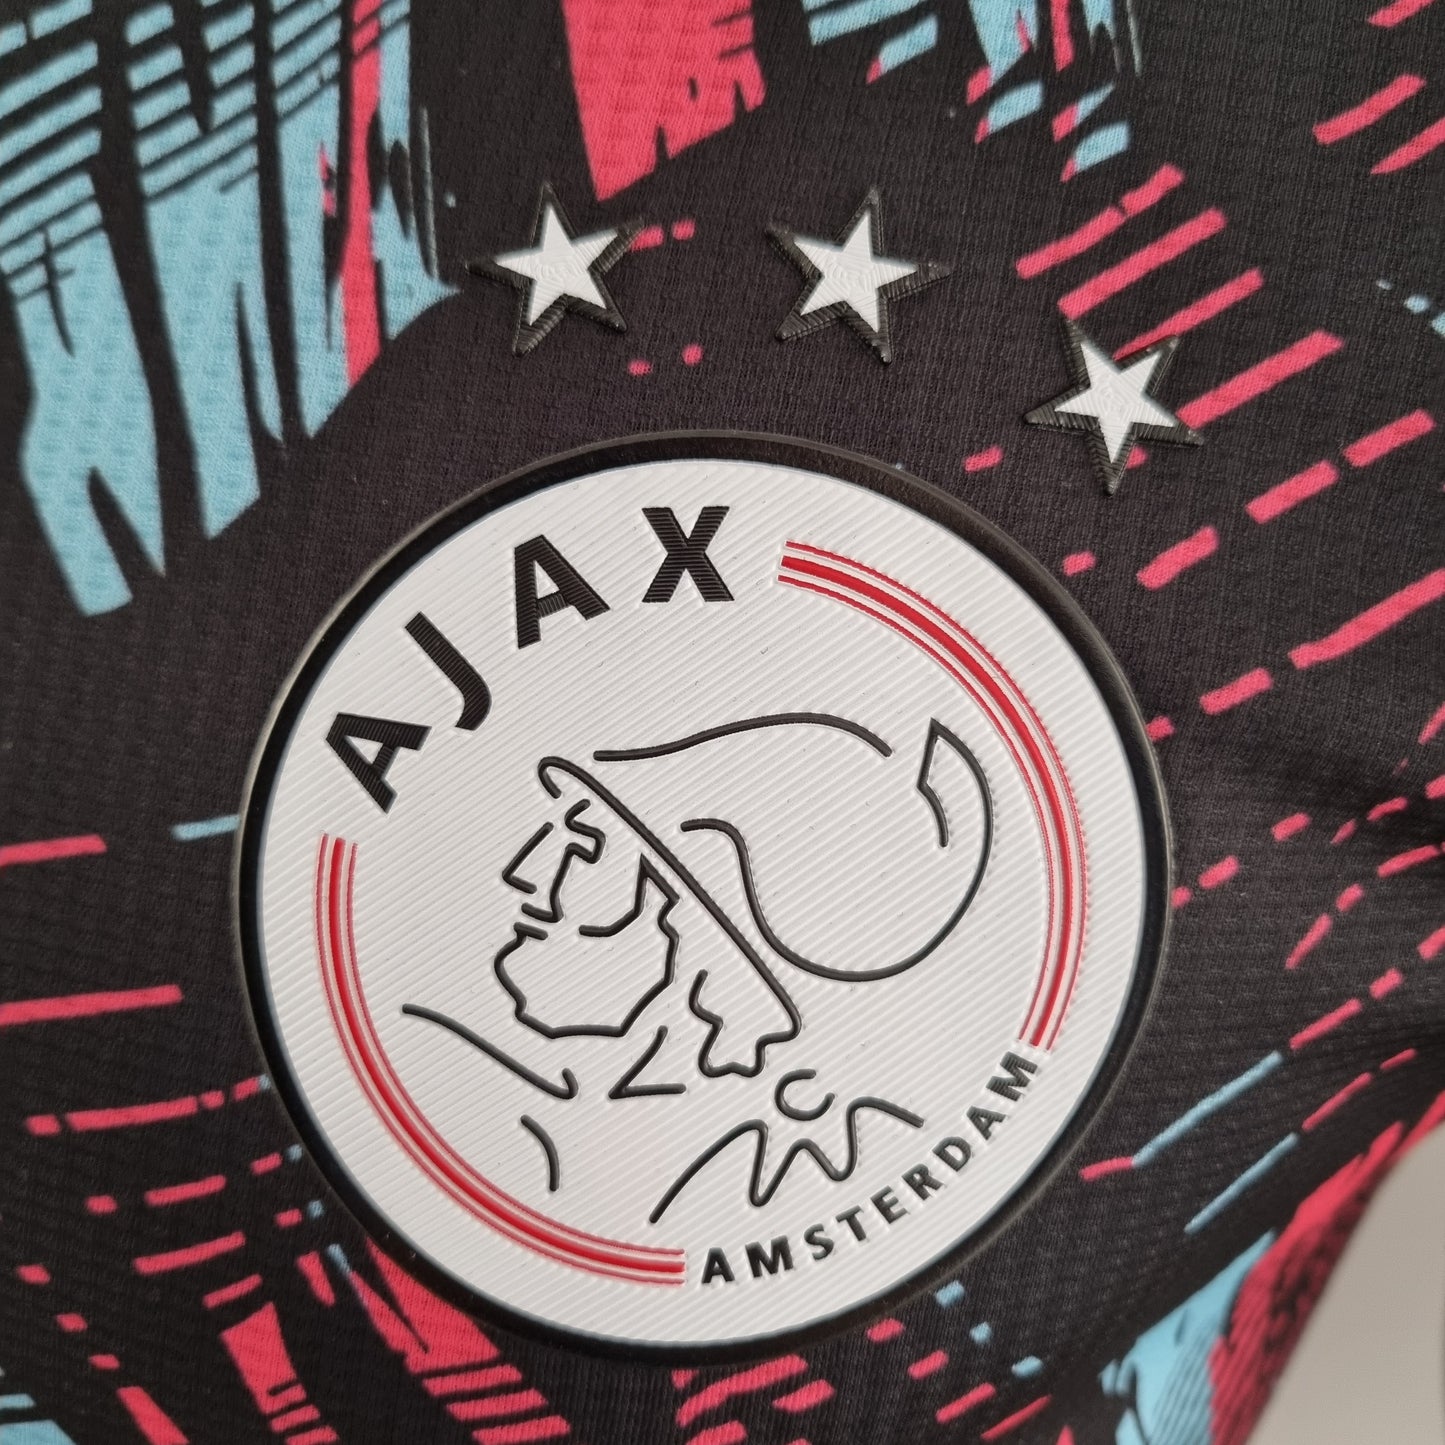 Ajax 2022/2023 Special Edition - Player Version